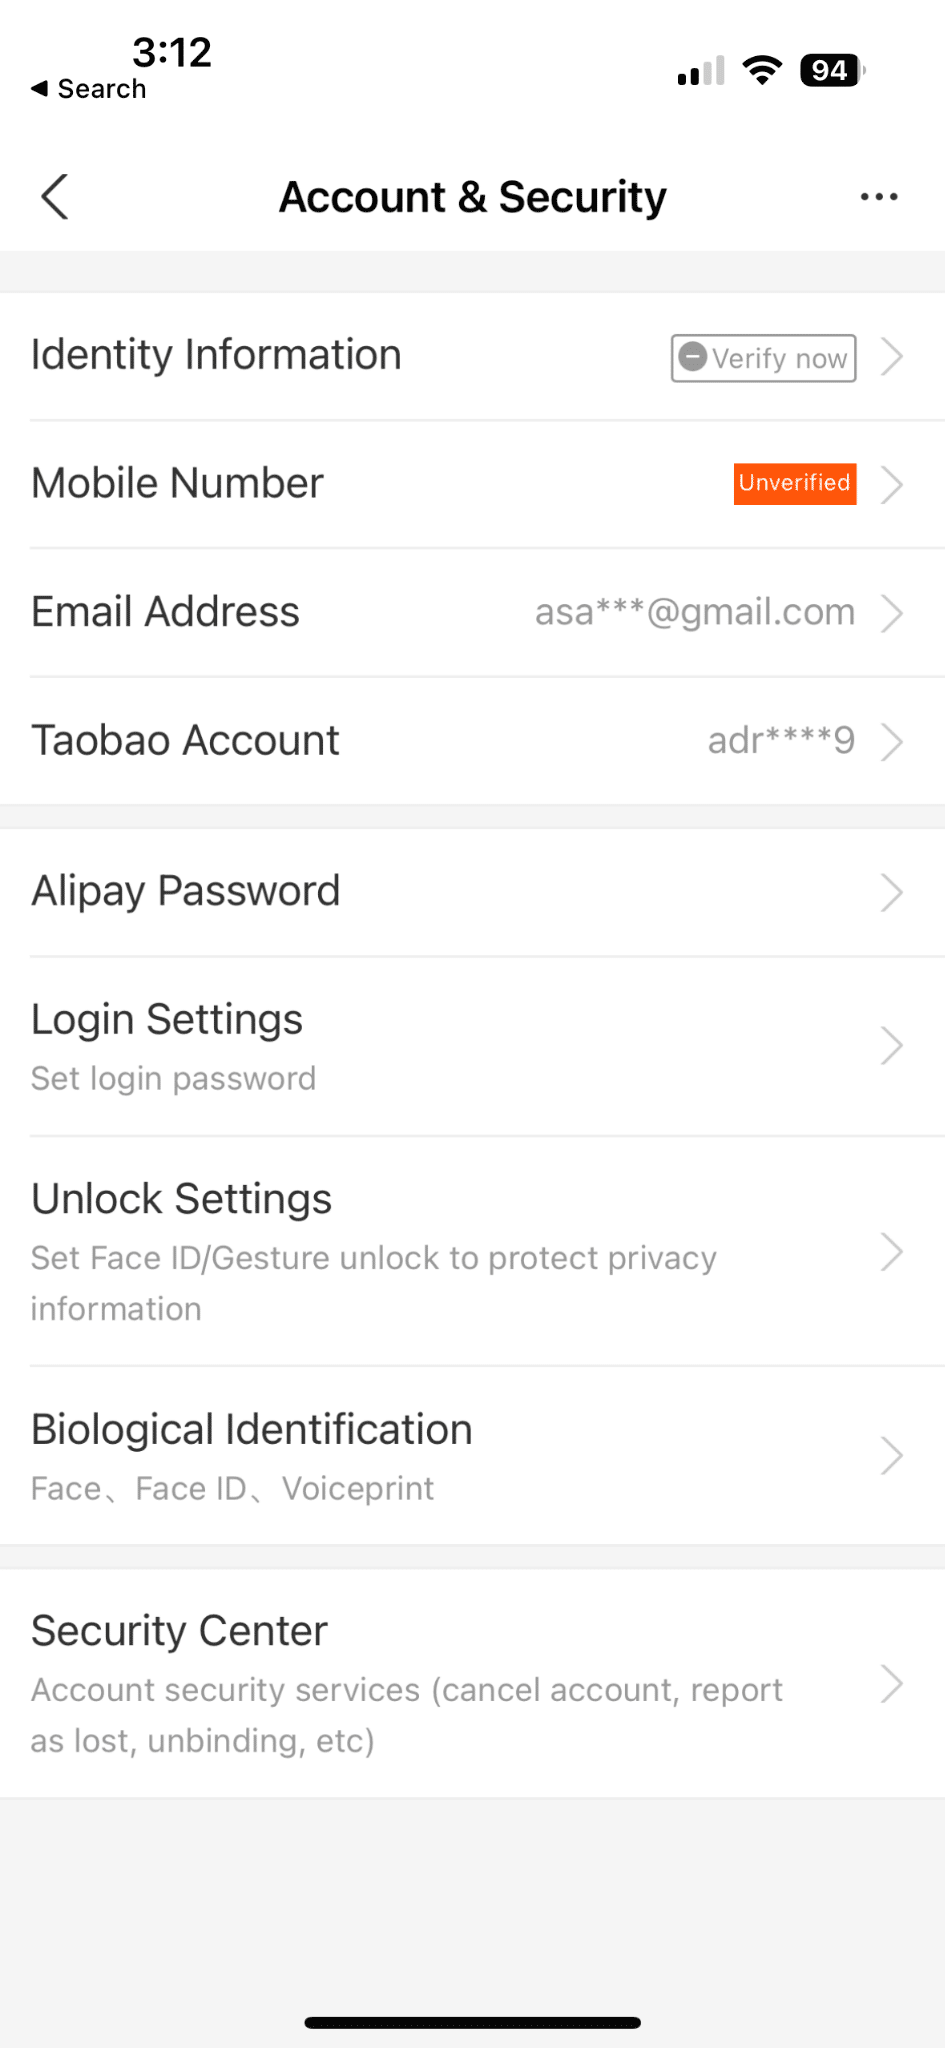 Create an Alipay account through the app settings